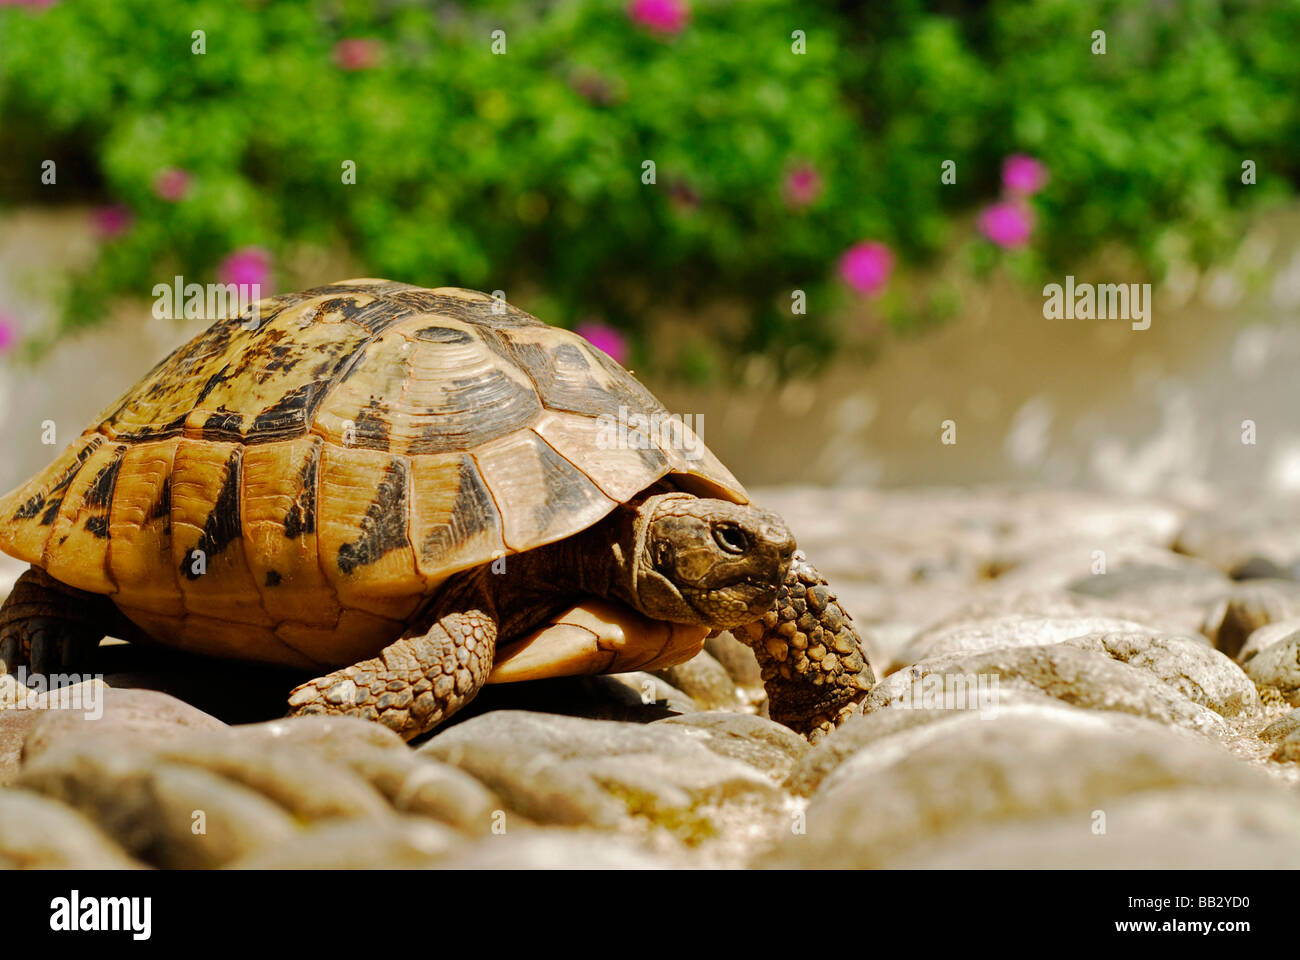 La BOSNIE ET HERZEGOVINE Mostar. Petite tortue de compagnie marche sur les pavés, sous le soleil des fleurs et de la végétation en arrière-plan Banque D'Images